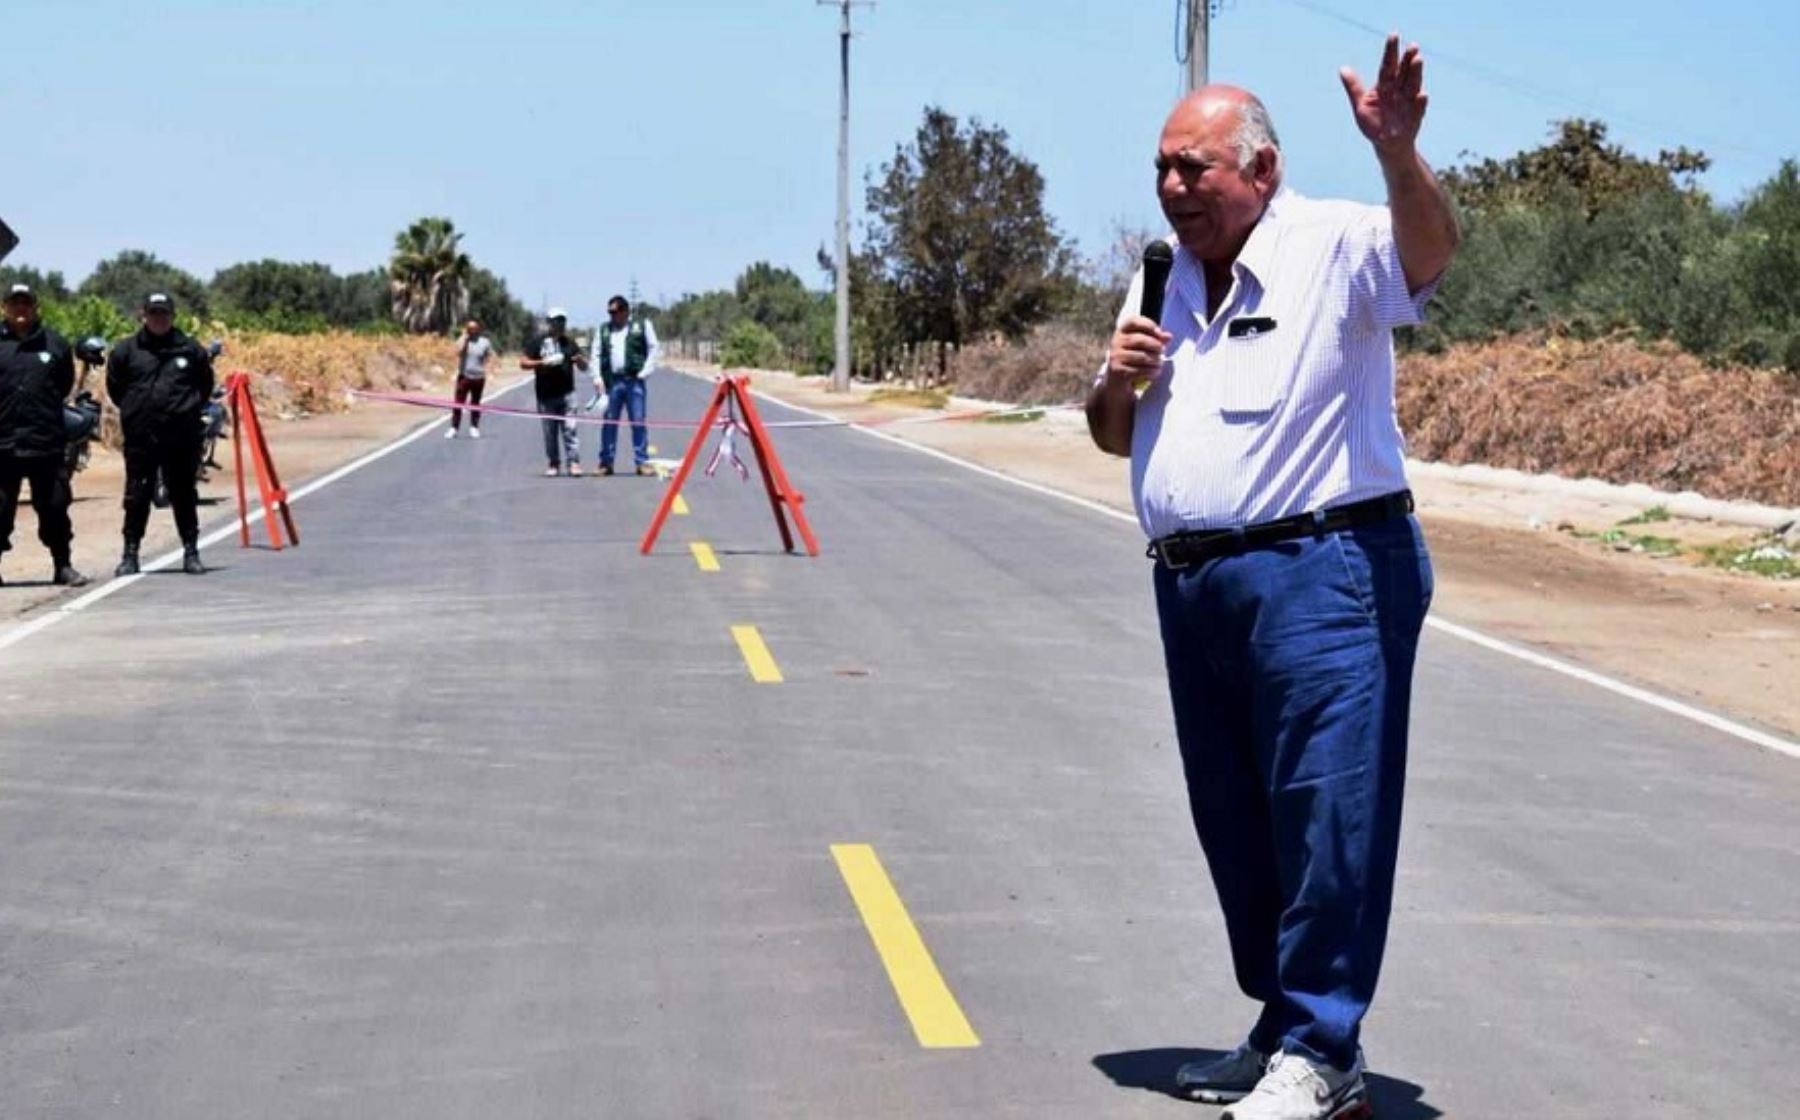 La nueva carretera inaugurada por el alcalde provincial de Tacna, Luis Torres Robledo, en el distrito fronterizo de La Yarada-Los Palos, se convertirá en una importante vía que facilitará el transporte de los productos agrícolas y pesqueros, además de fomentar el turismo, sostuvo la autoridad edilicia.